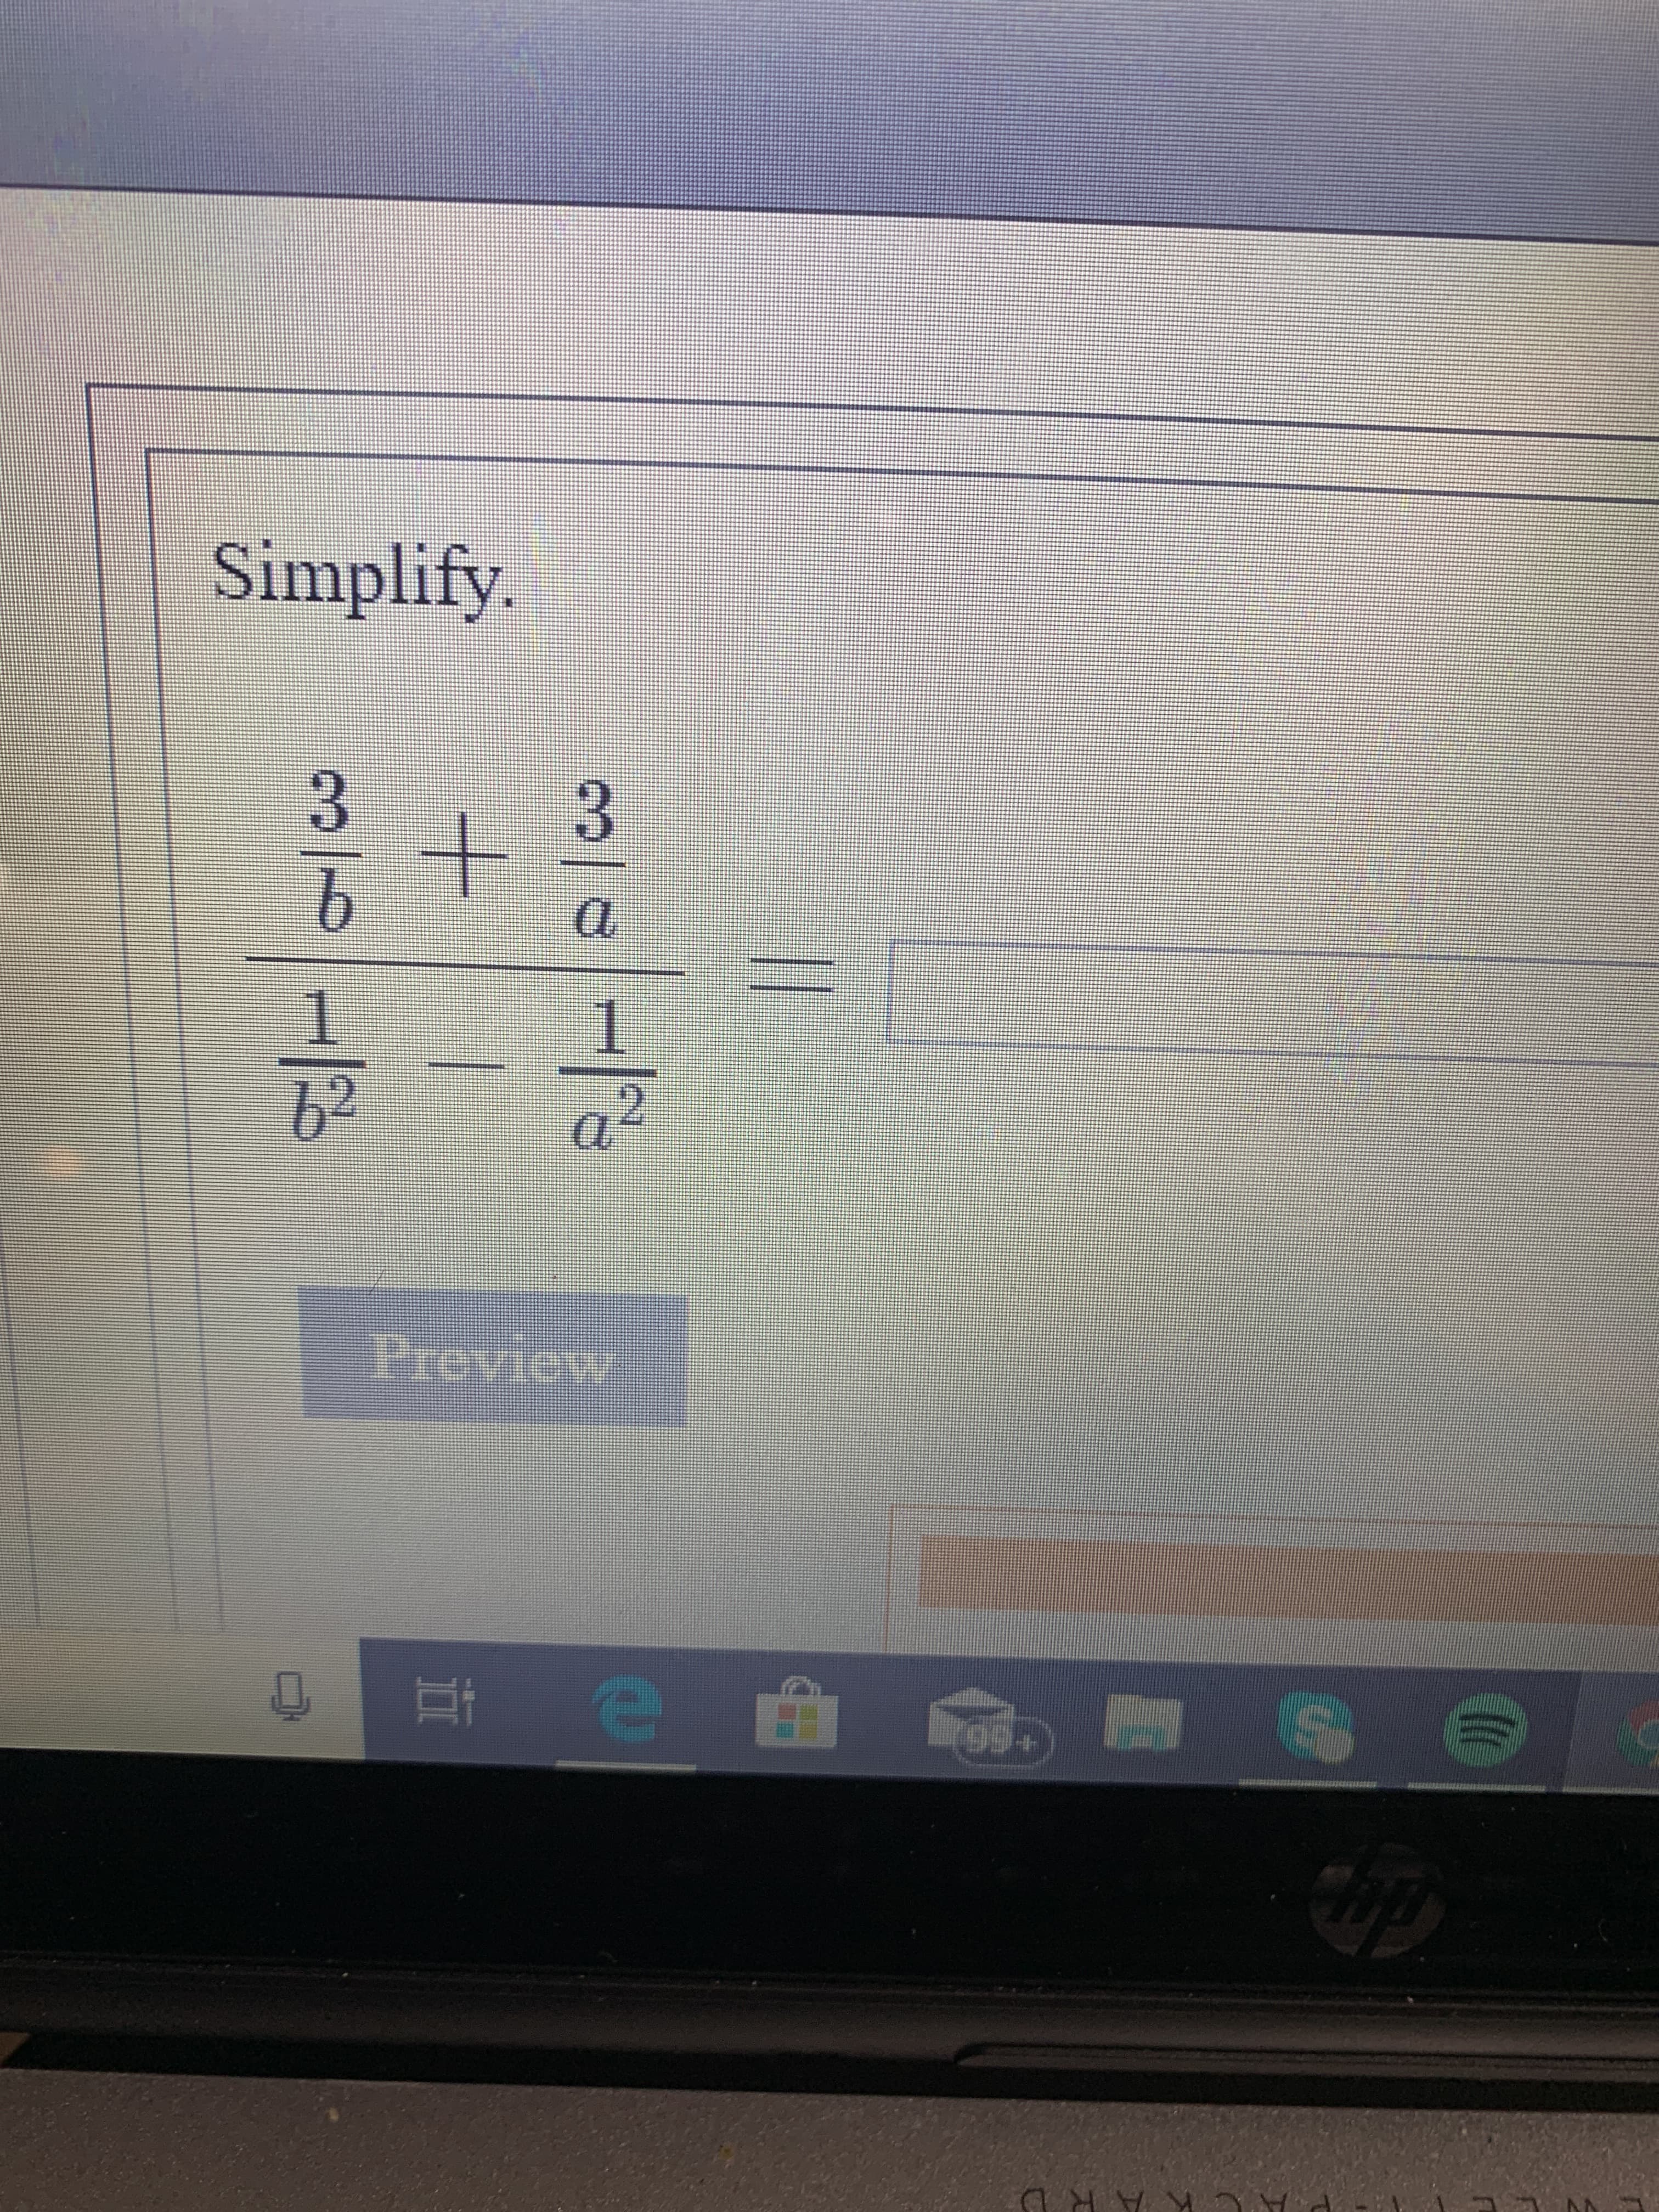 Simplify
3
b
b2
Preview
99+
